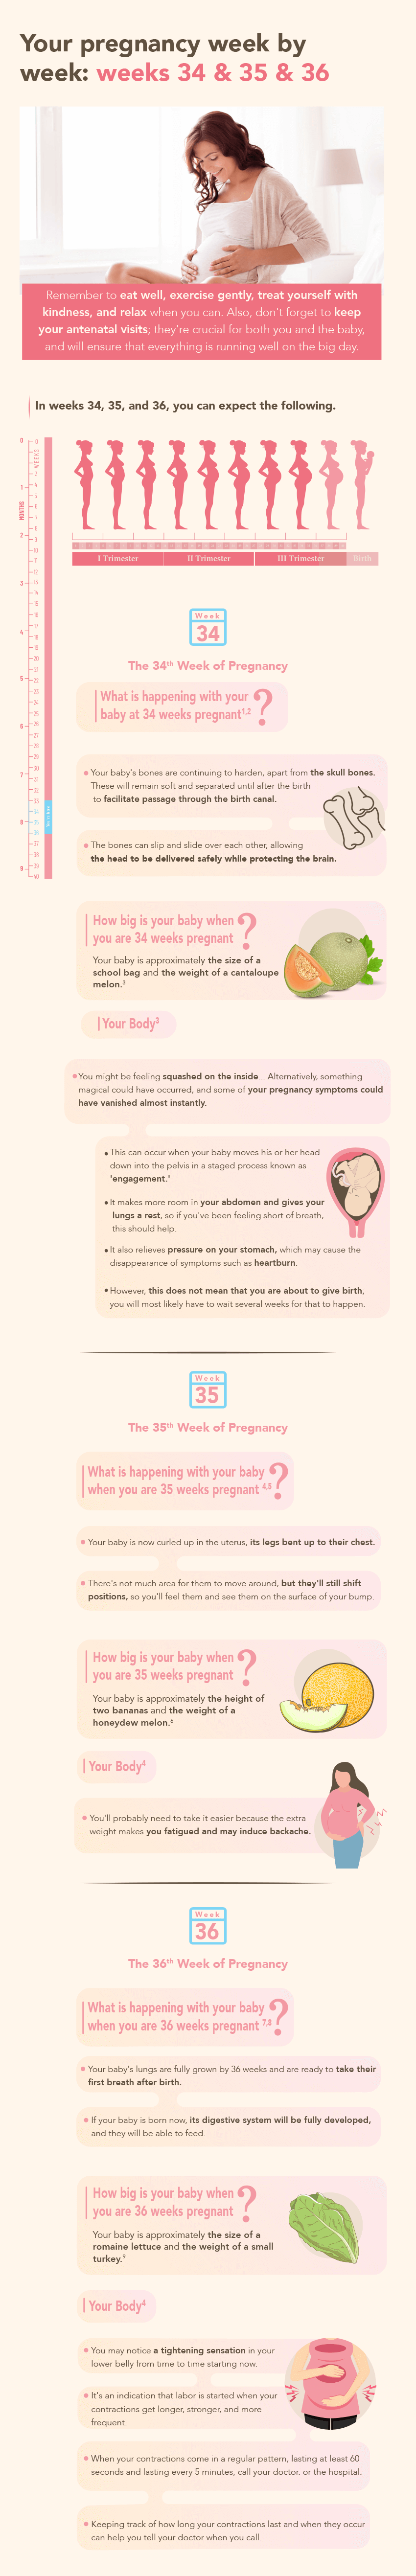 Pregnancy weeks 34-36